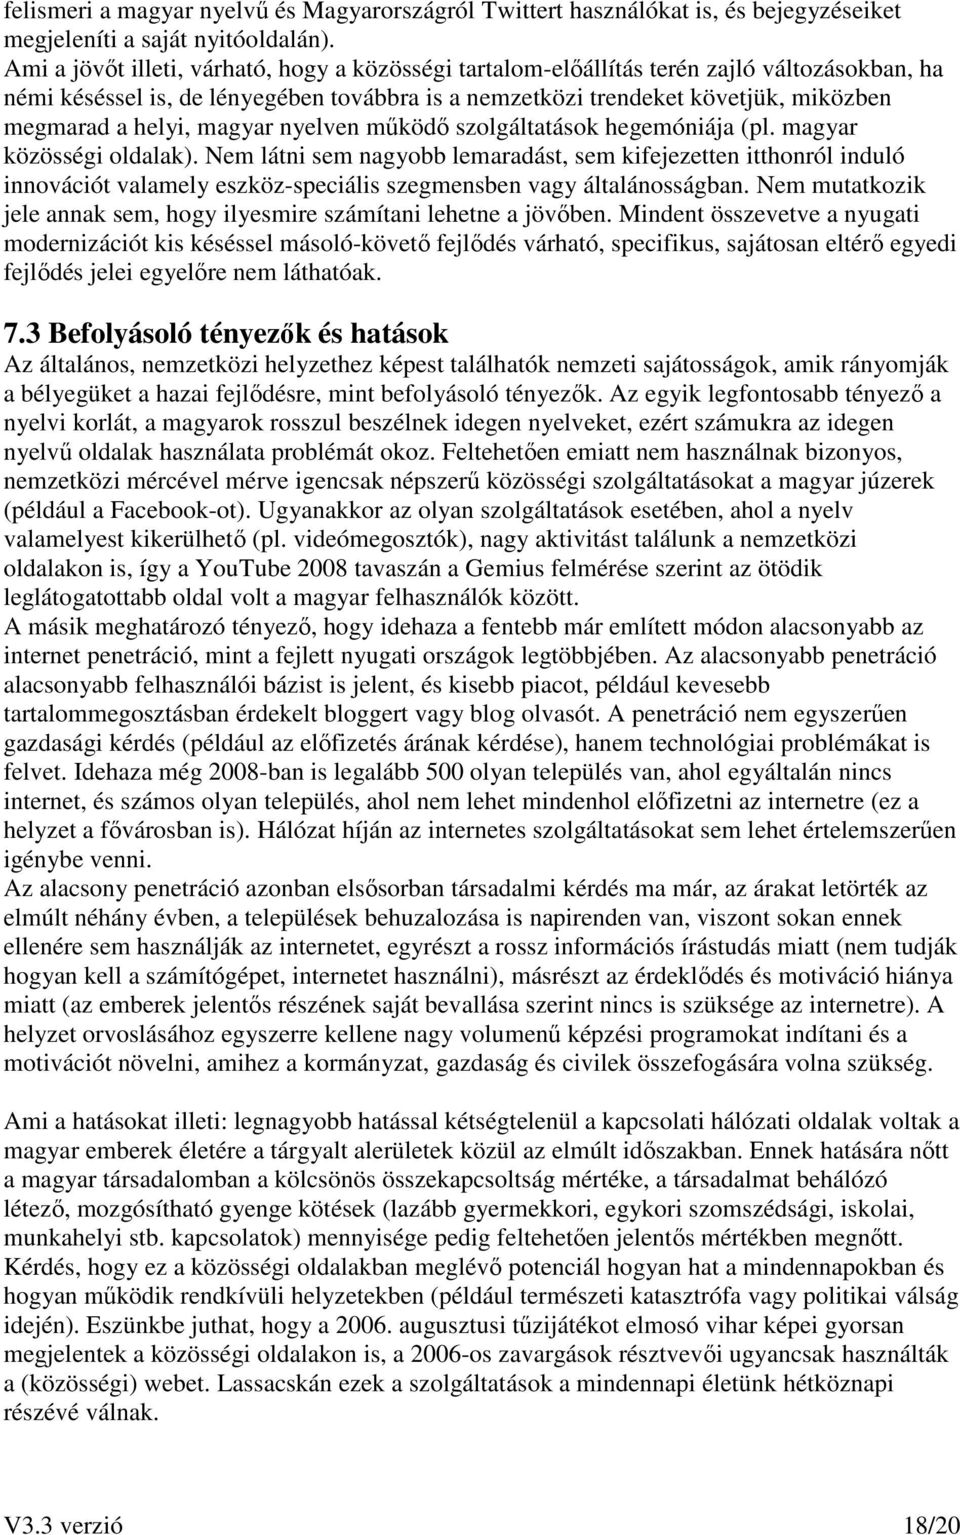 magyar nyelven mőködı szolgáltatások hegemóniája (pl. magyar közösségi oldalak).